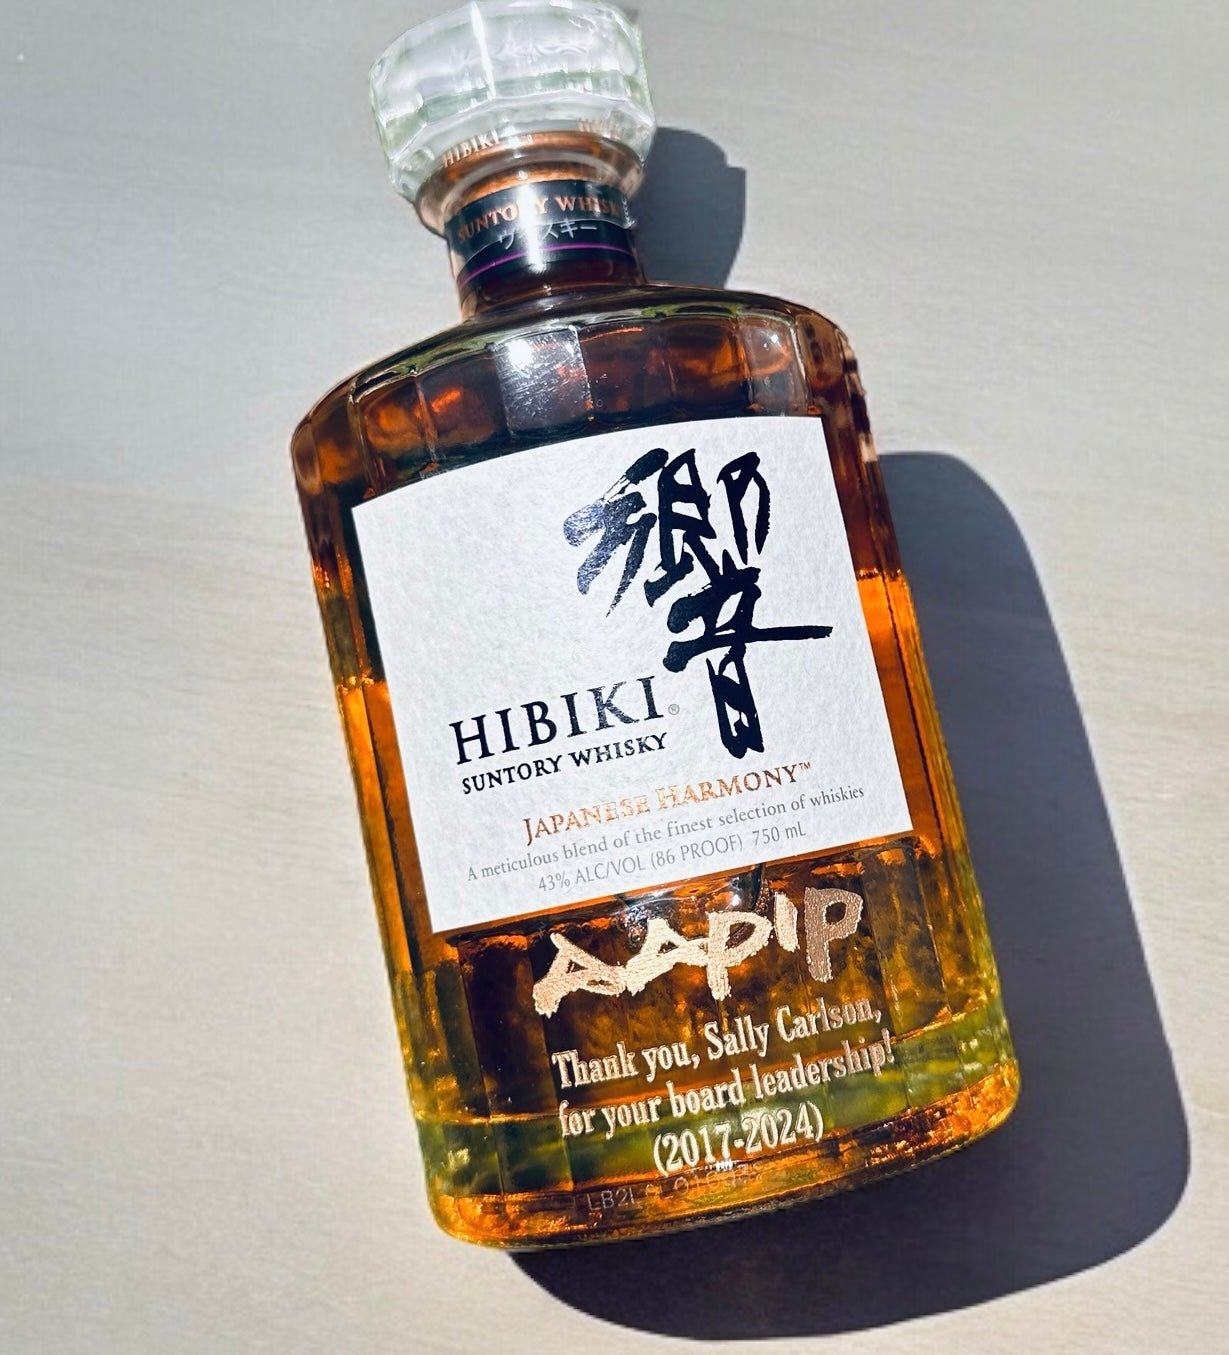 Hibiki 21 Year Blended Japanese Whisky - Bottle Engraving